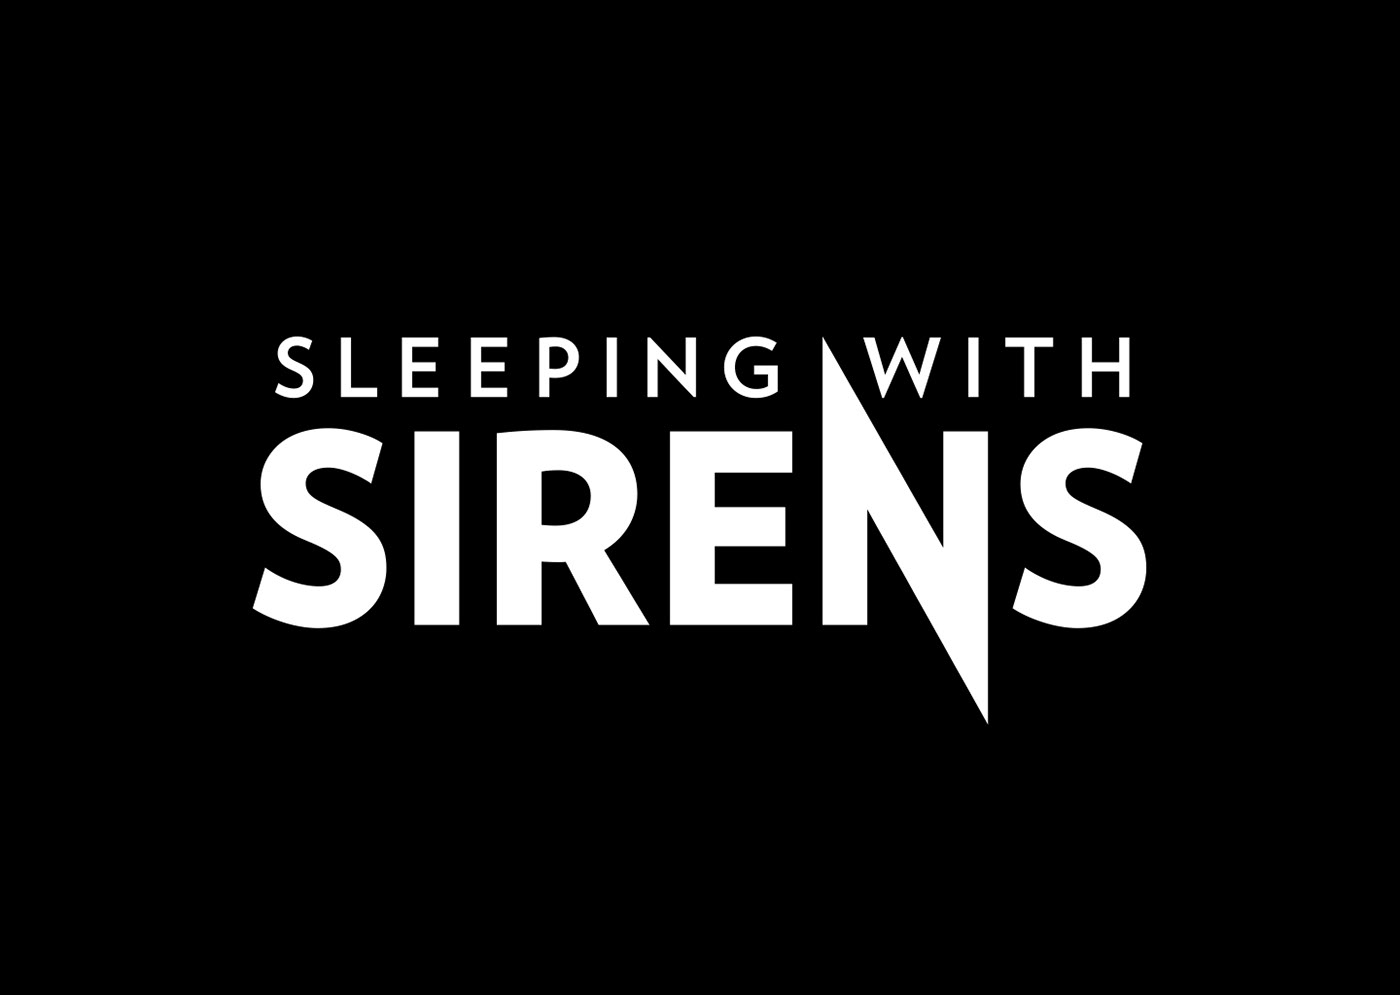 sleepingwithsirens sirens Album vinyl music Packaging rock